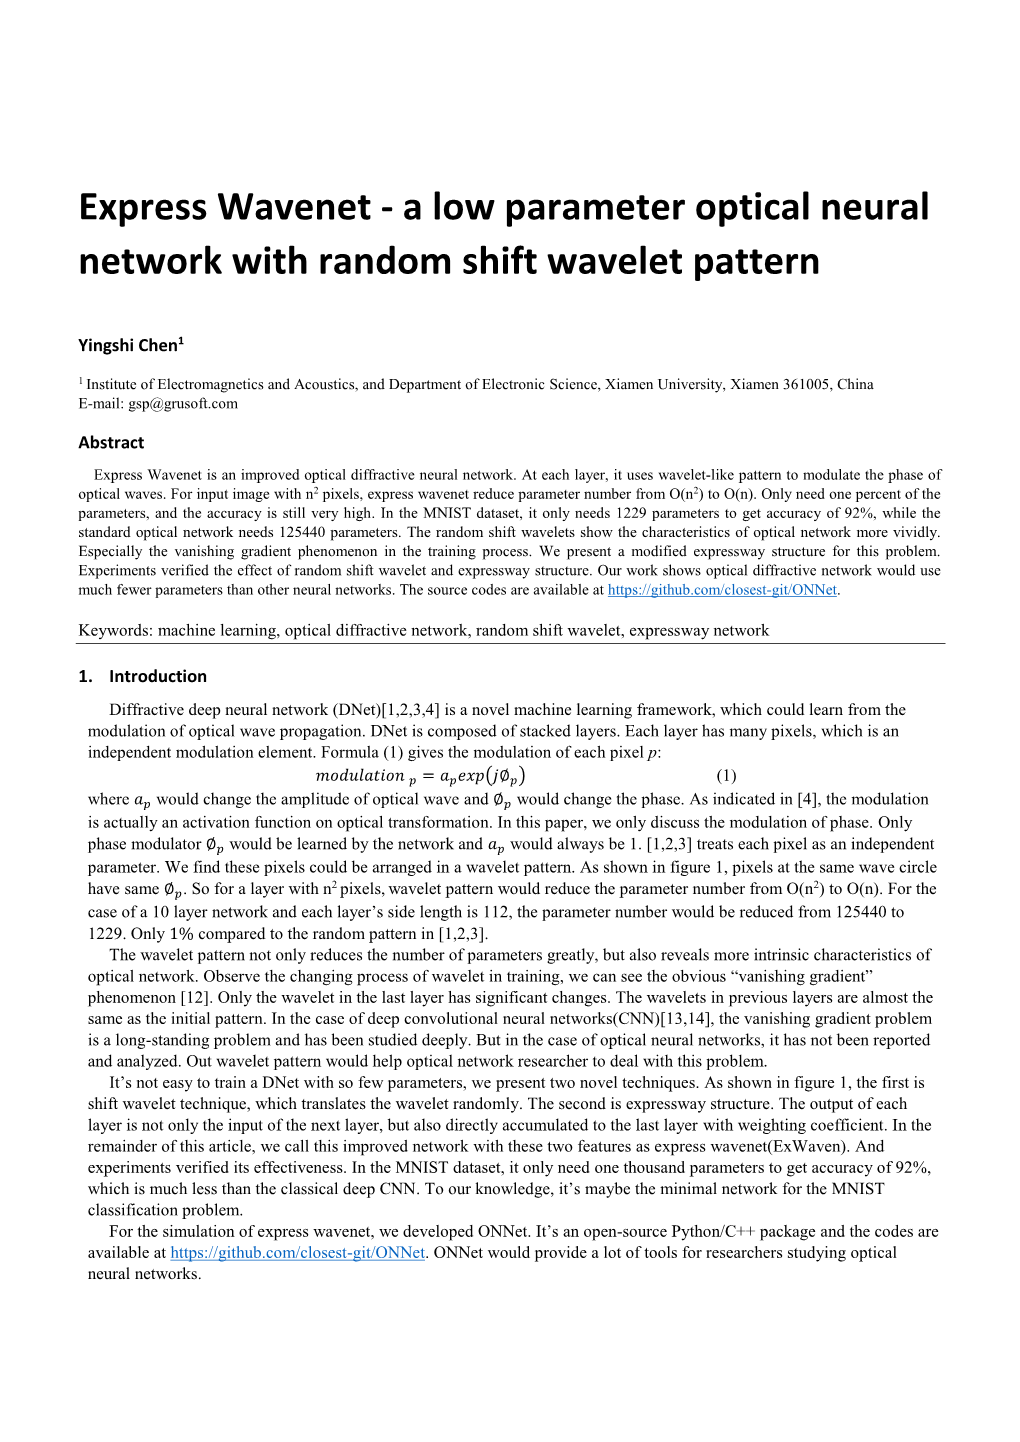 Express Wavenet - a Low Parameter Optical Neural Network with Random Shift Wavelet Pattern